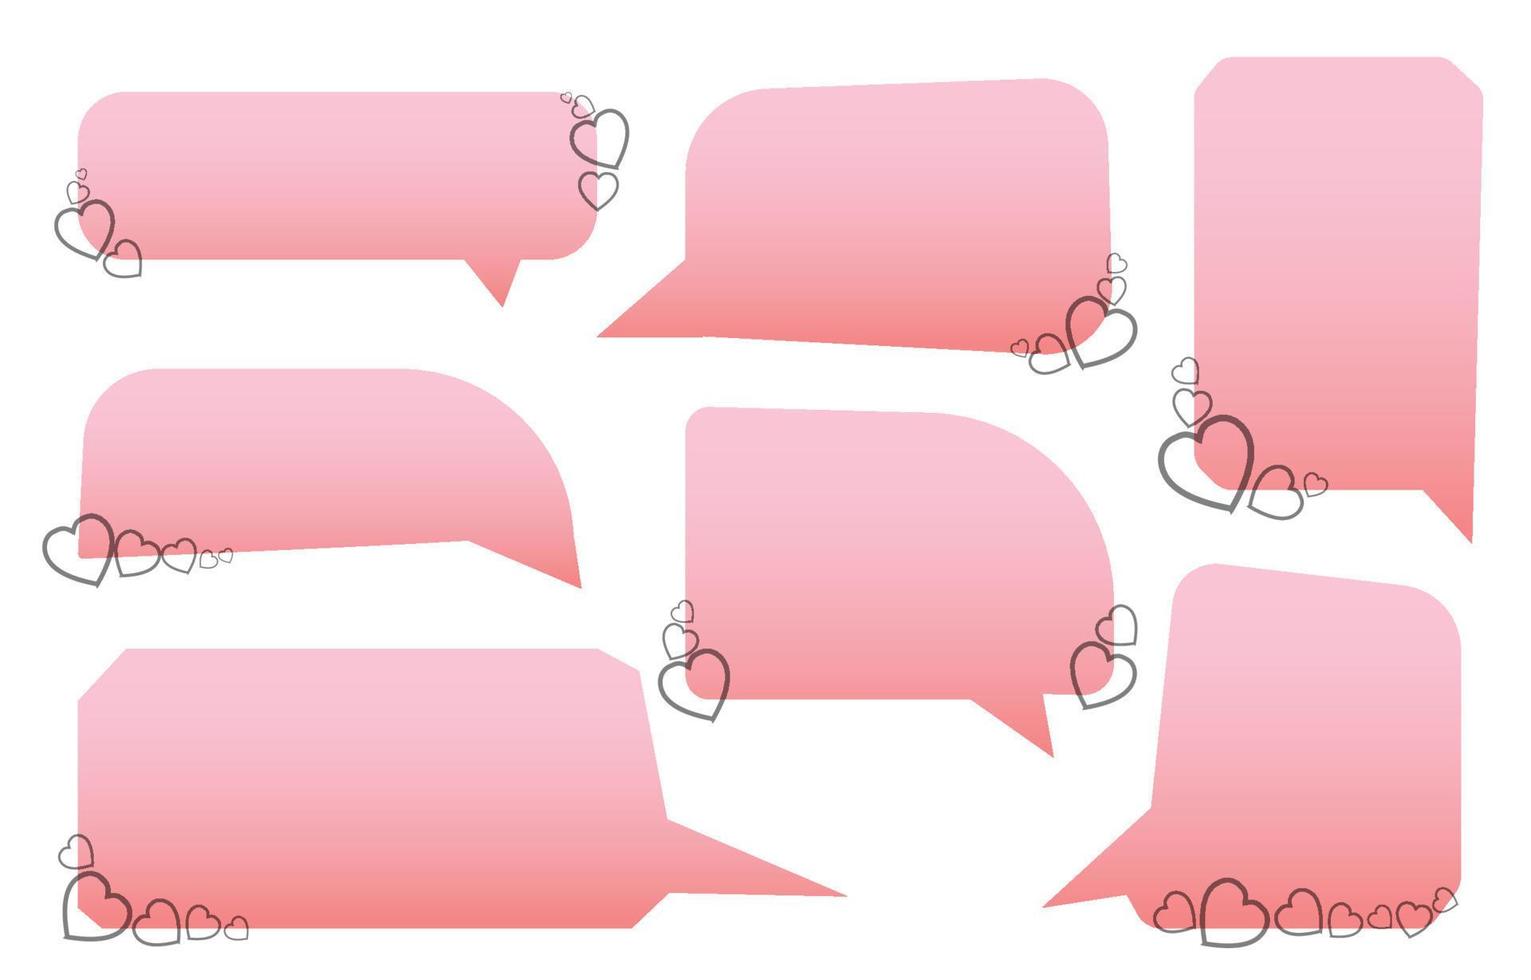 définir des bulles de la Saint-Valentin sur fond blanc. décoré de coeurs. chat vecteur carré et doodle message ou icône de communication nuage parlant pour les bandes dessinées et dialogue de message minimal